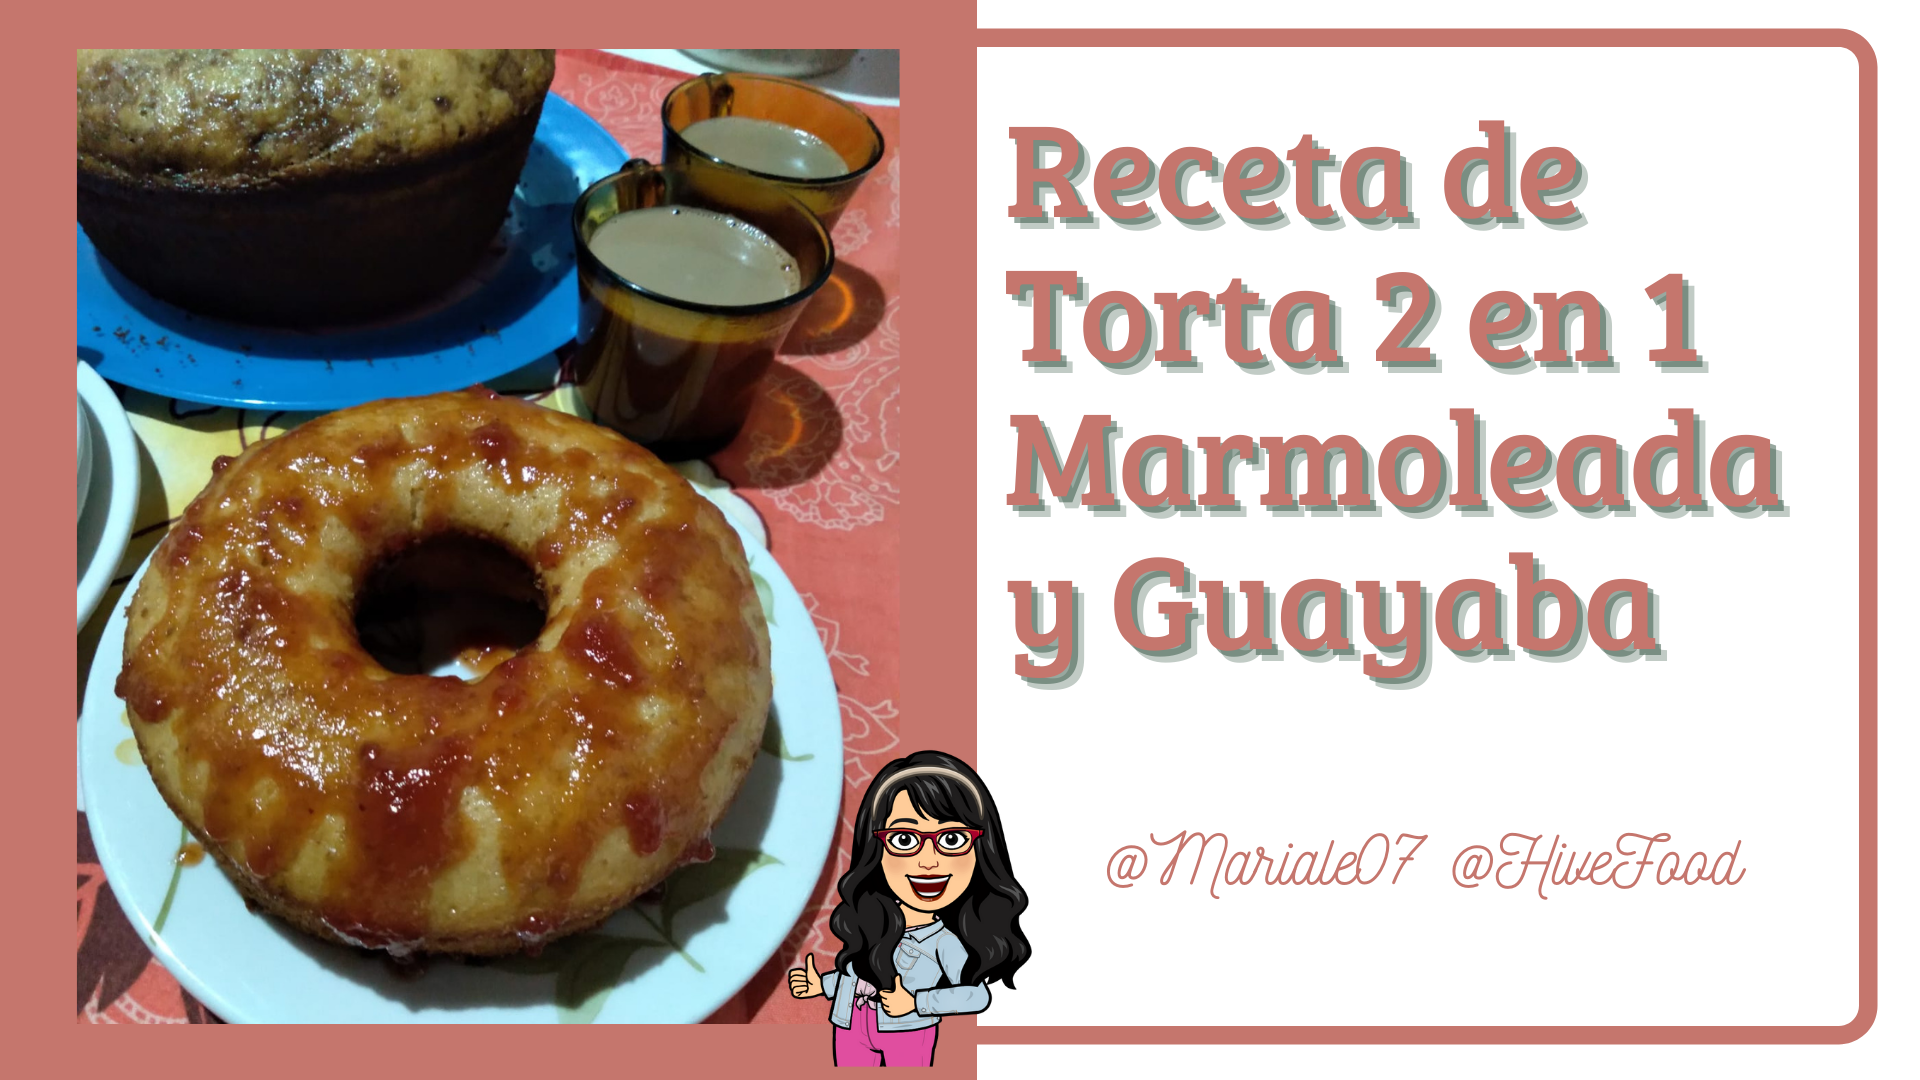 Receta de Torta 2 en 1 Marmoleada y Guayaba.png